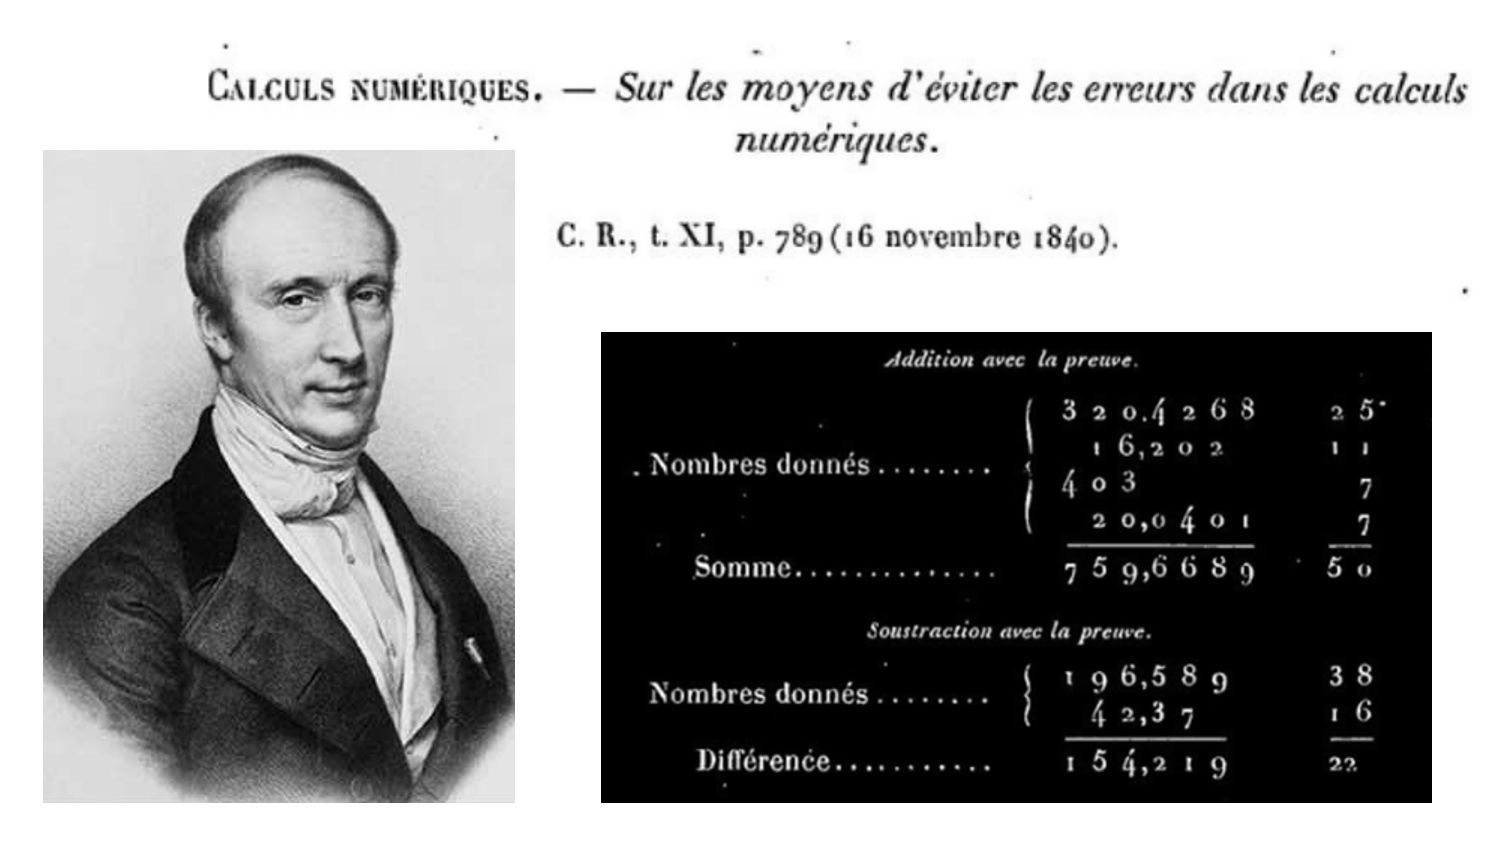  notación de Cauchy